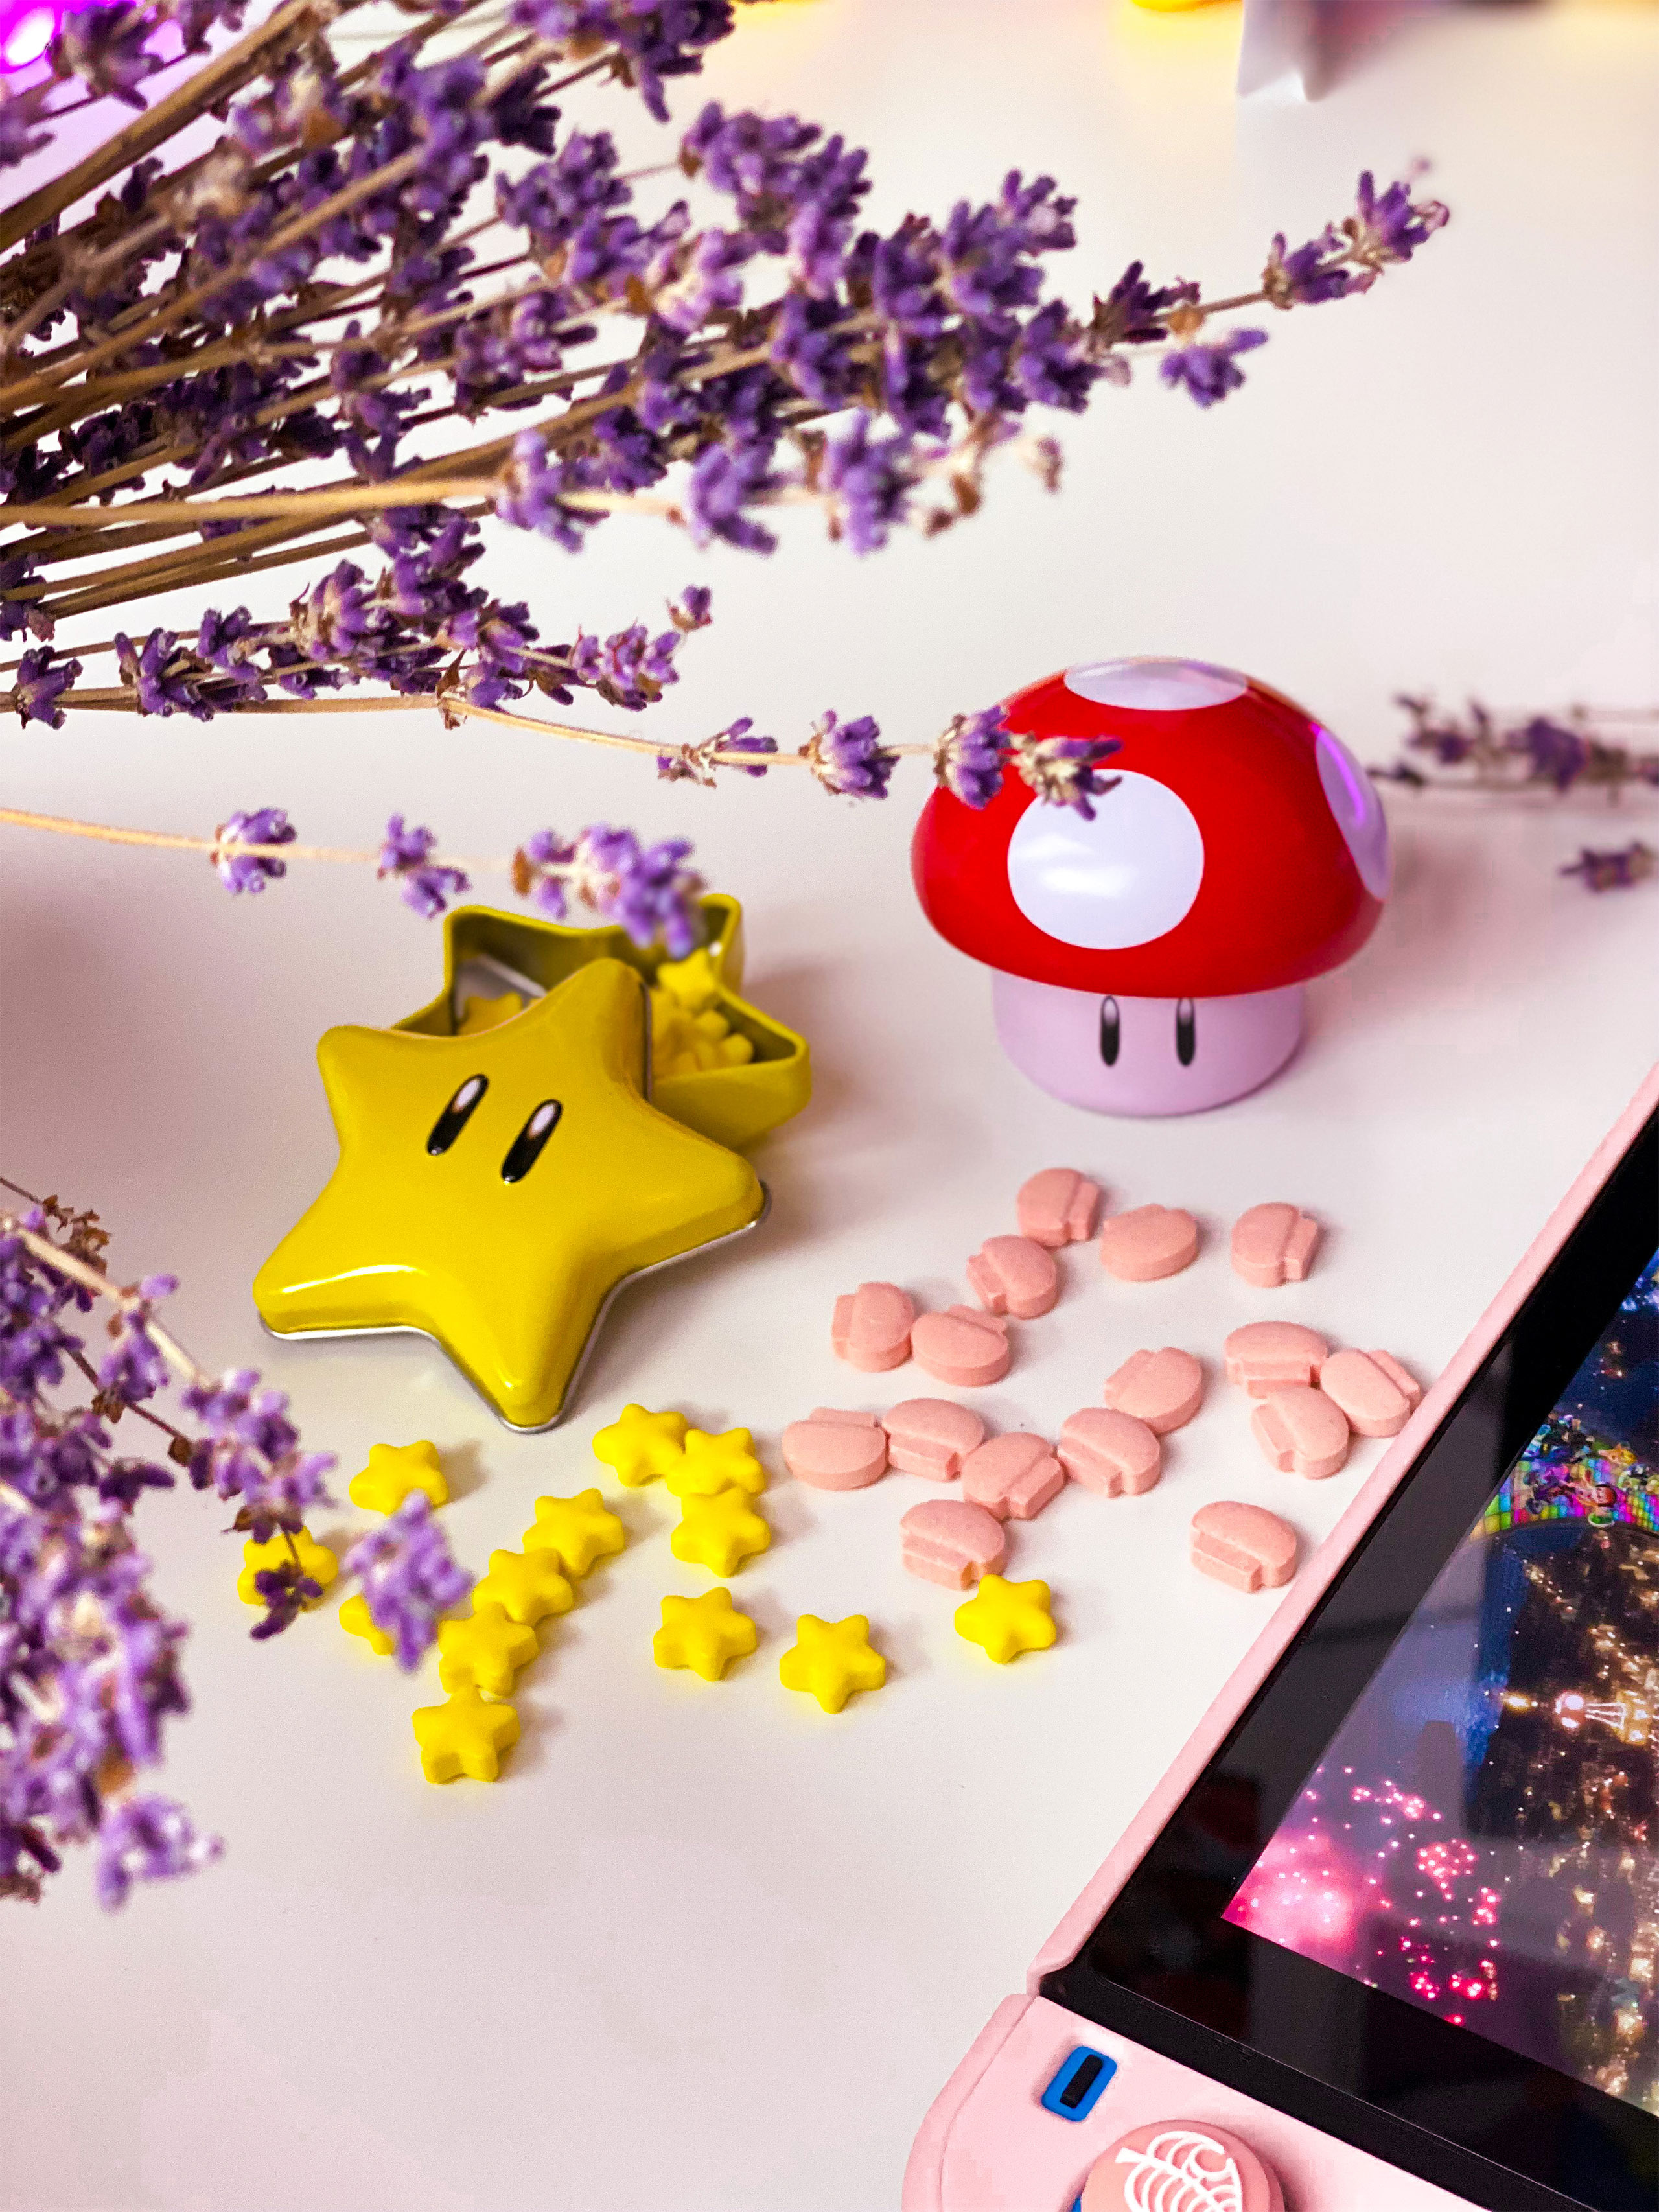 Super Mario - Mushroom Candies